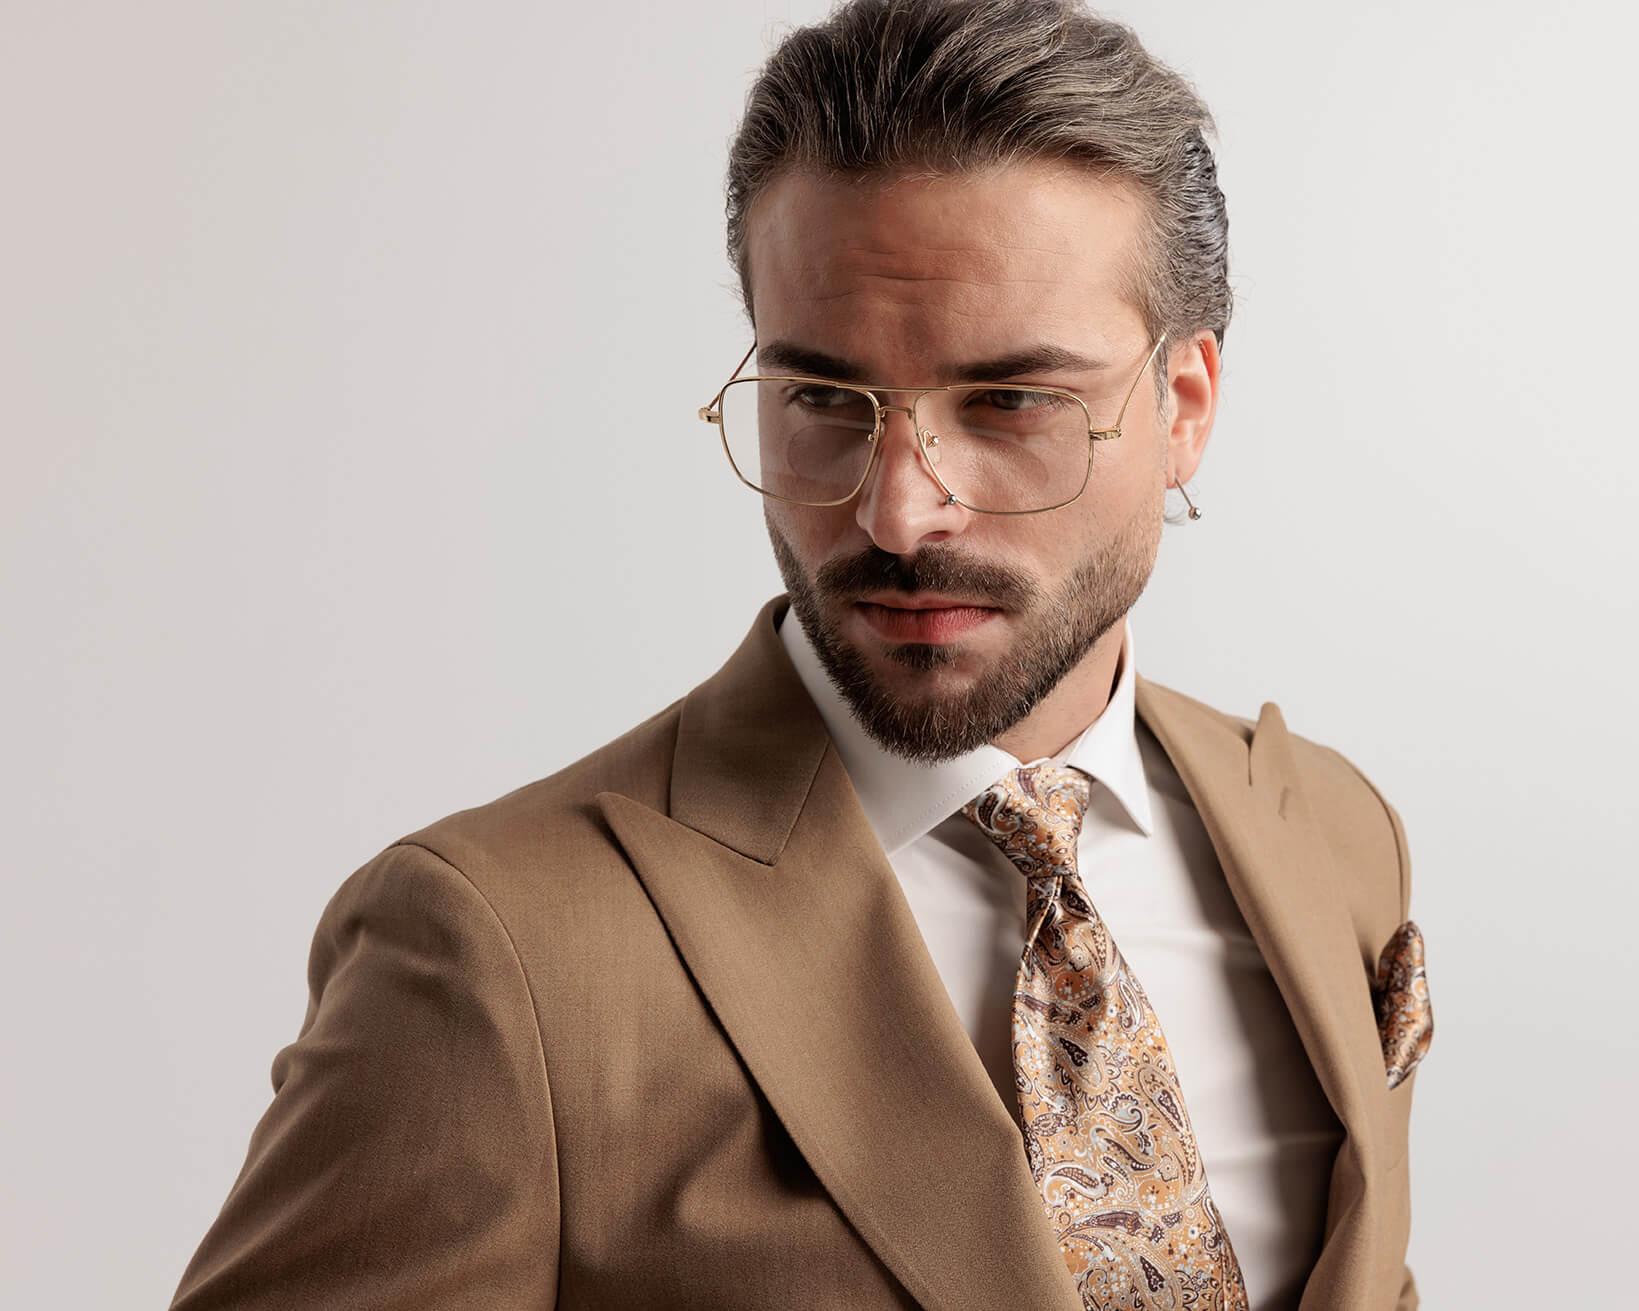 Mann mit goldener doppelsteg korrektionsbrille und beigen anzug